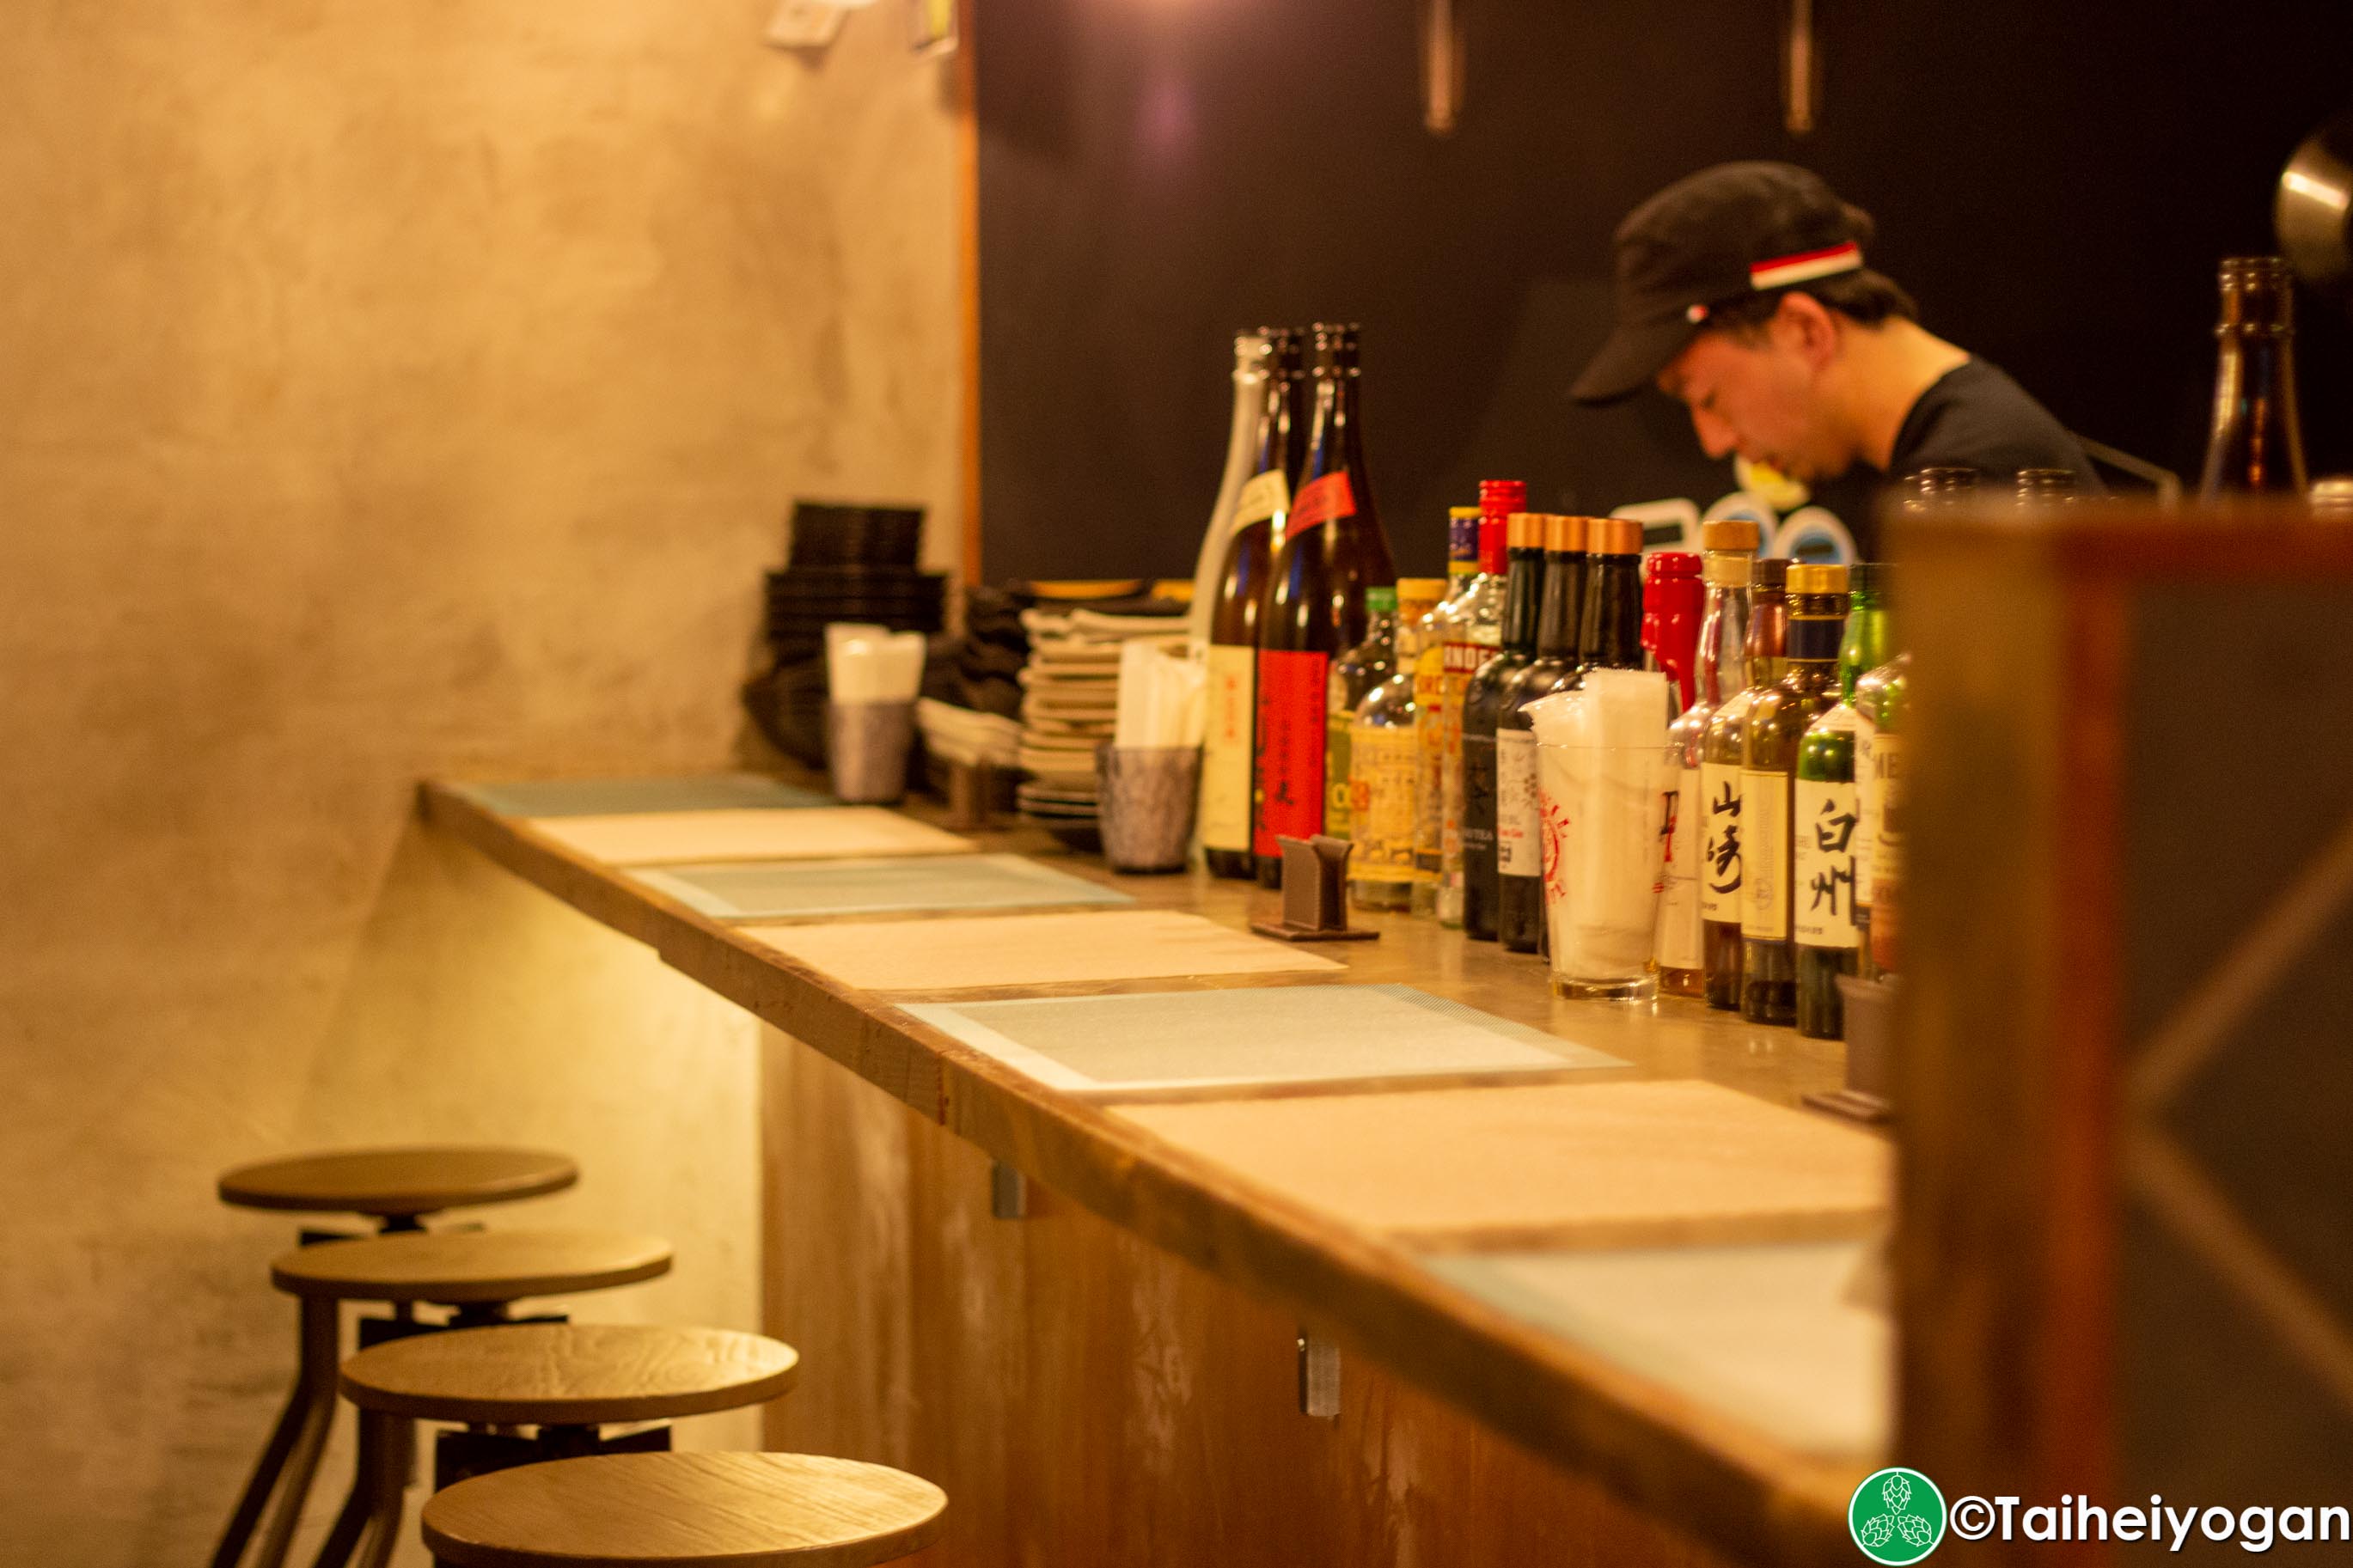 Karakuri Craft Beer & Oden & Sake - Interior - Bar Counter